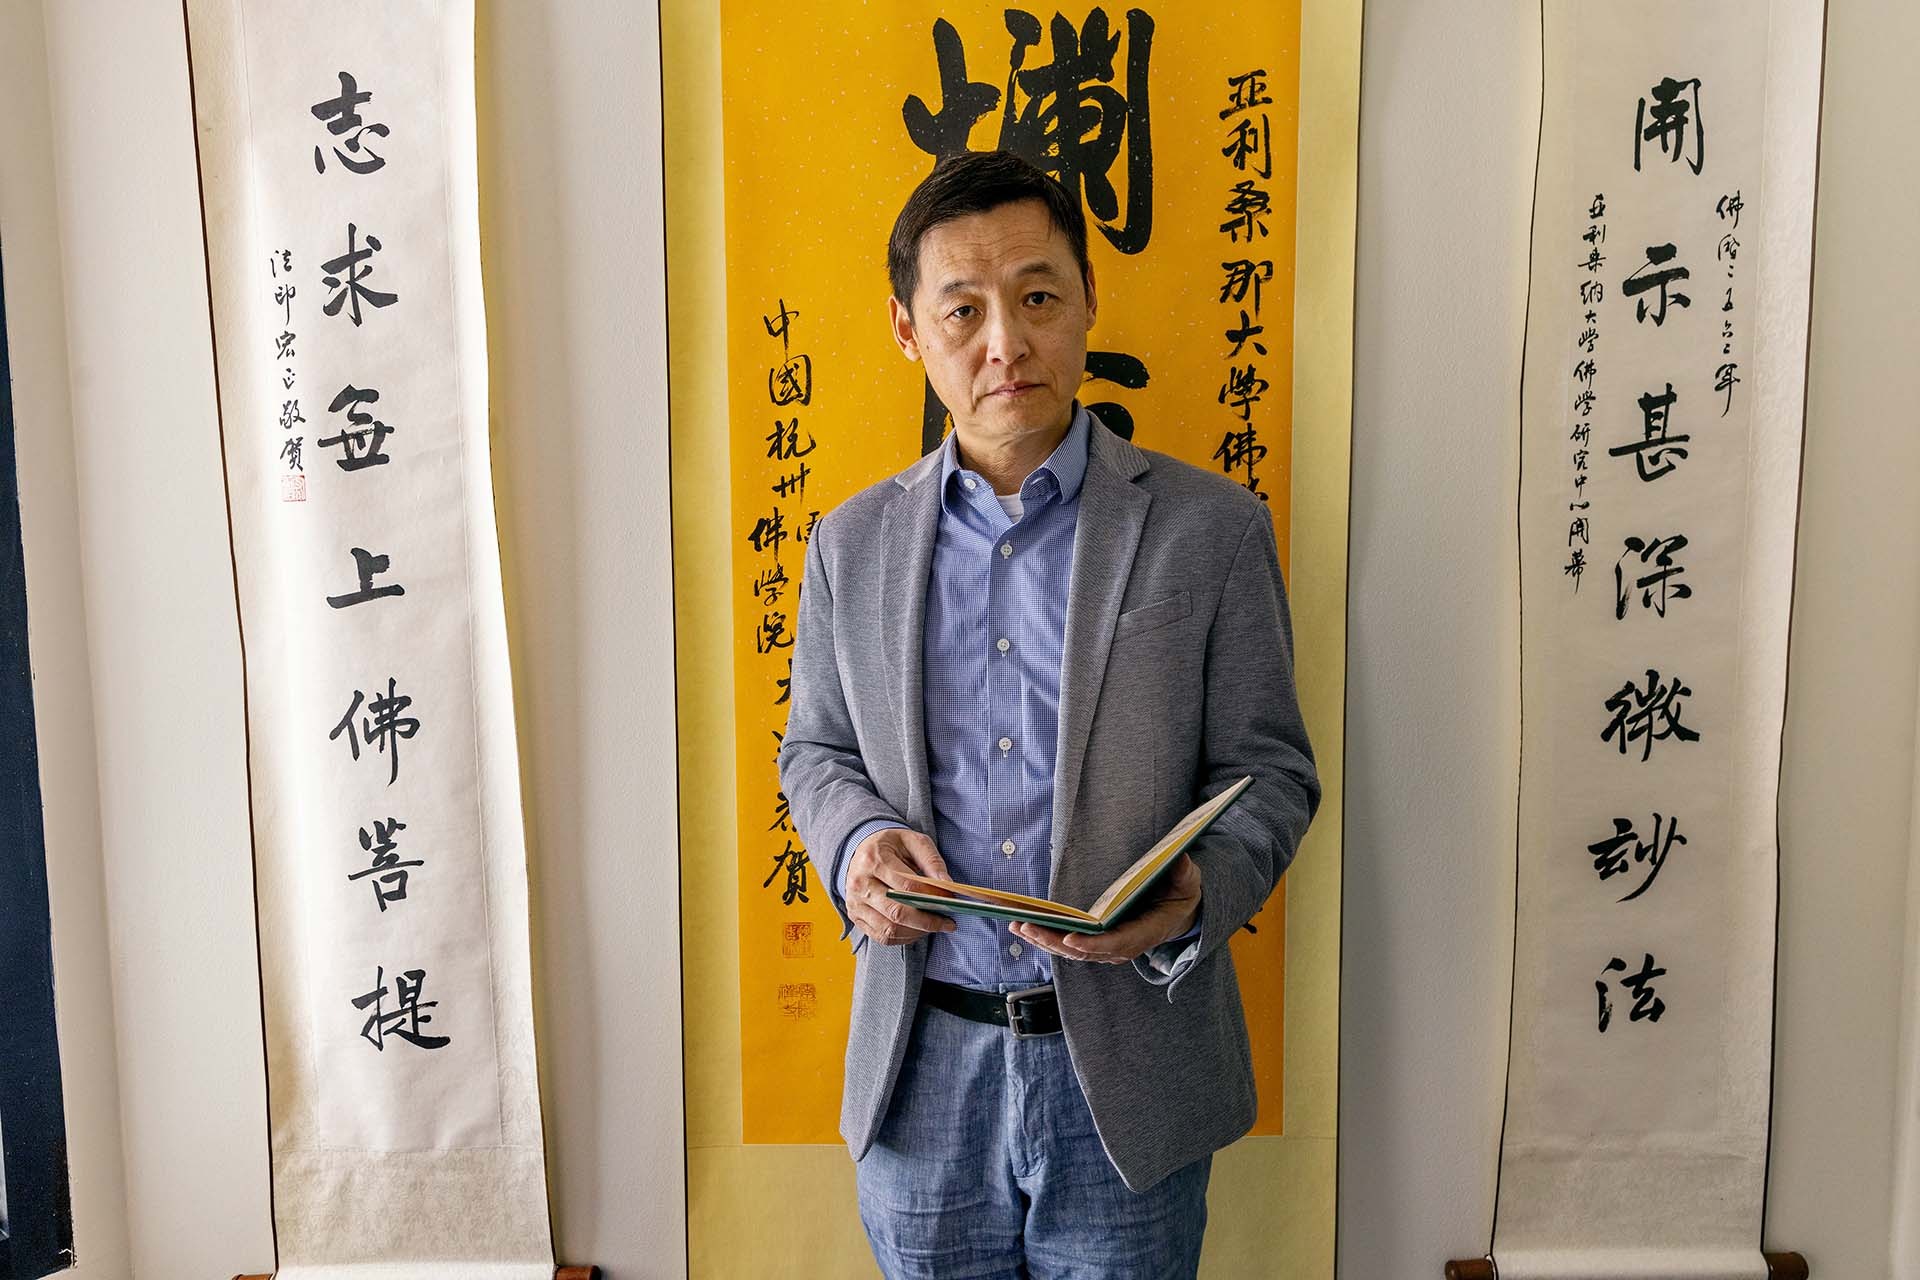 A photograph of Jiang Wu